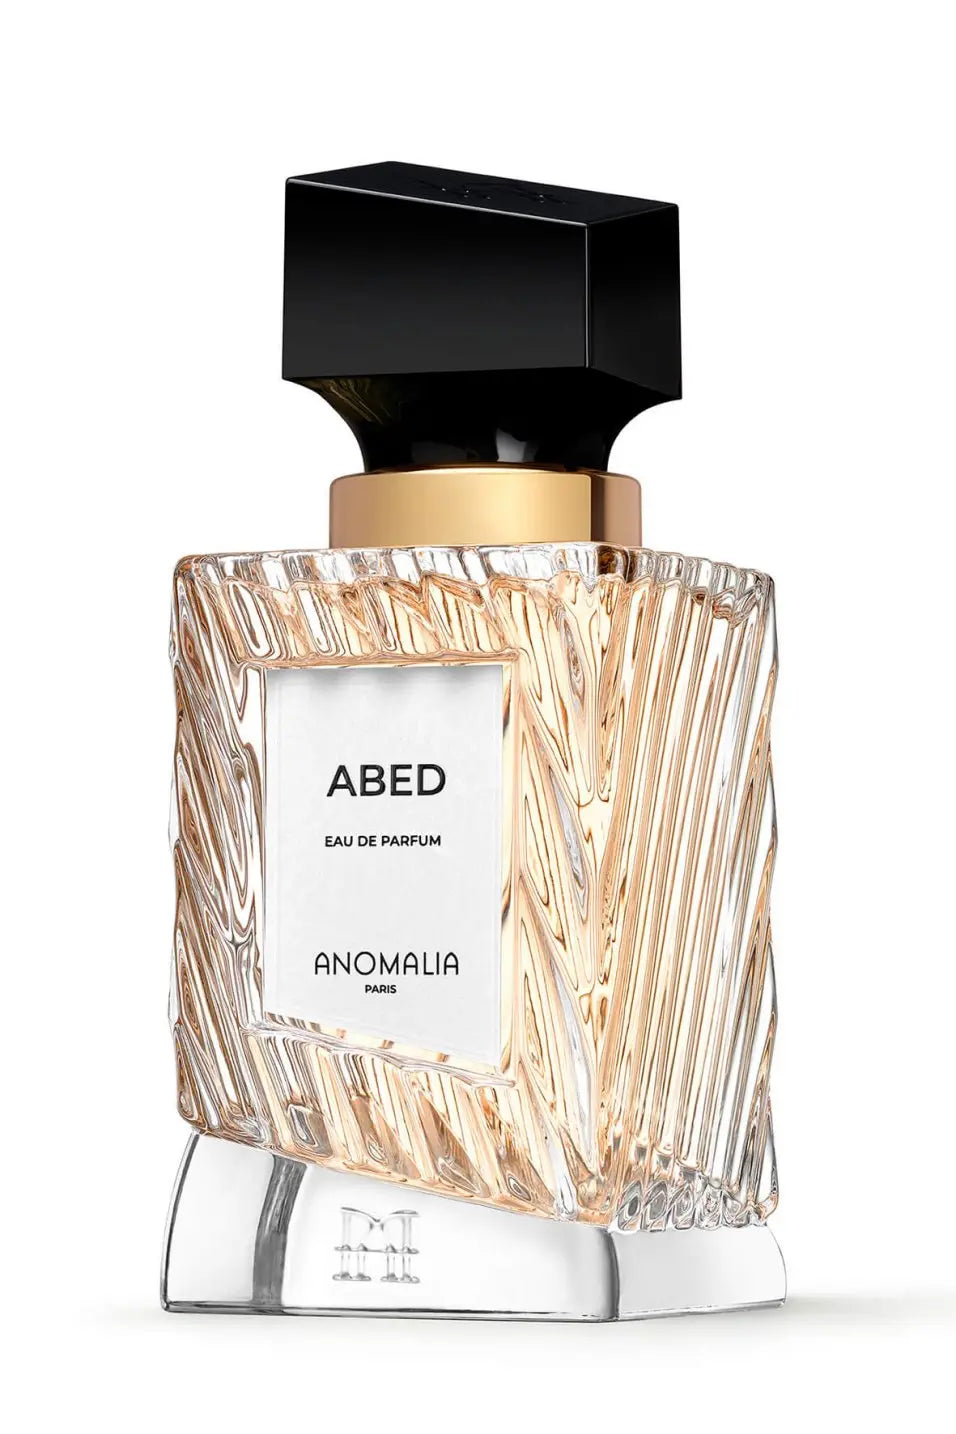 Anomalia Abed Eau de Parfum – 70 ml